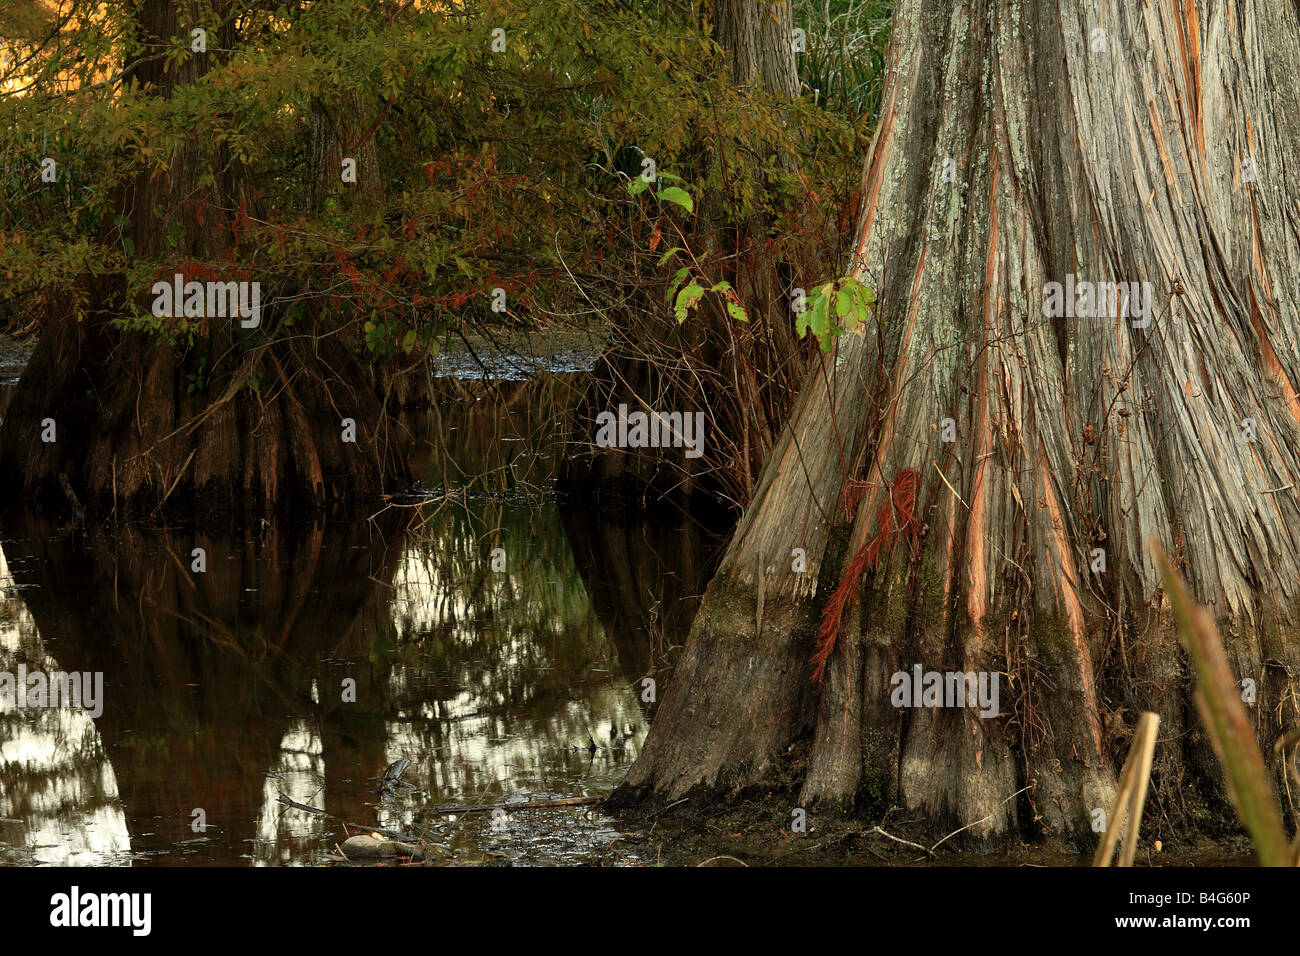 Cypress Tree in Bayou near Caddo Lake, Shreveport, Louisiana, USA Stock Photo